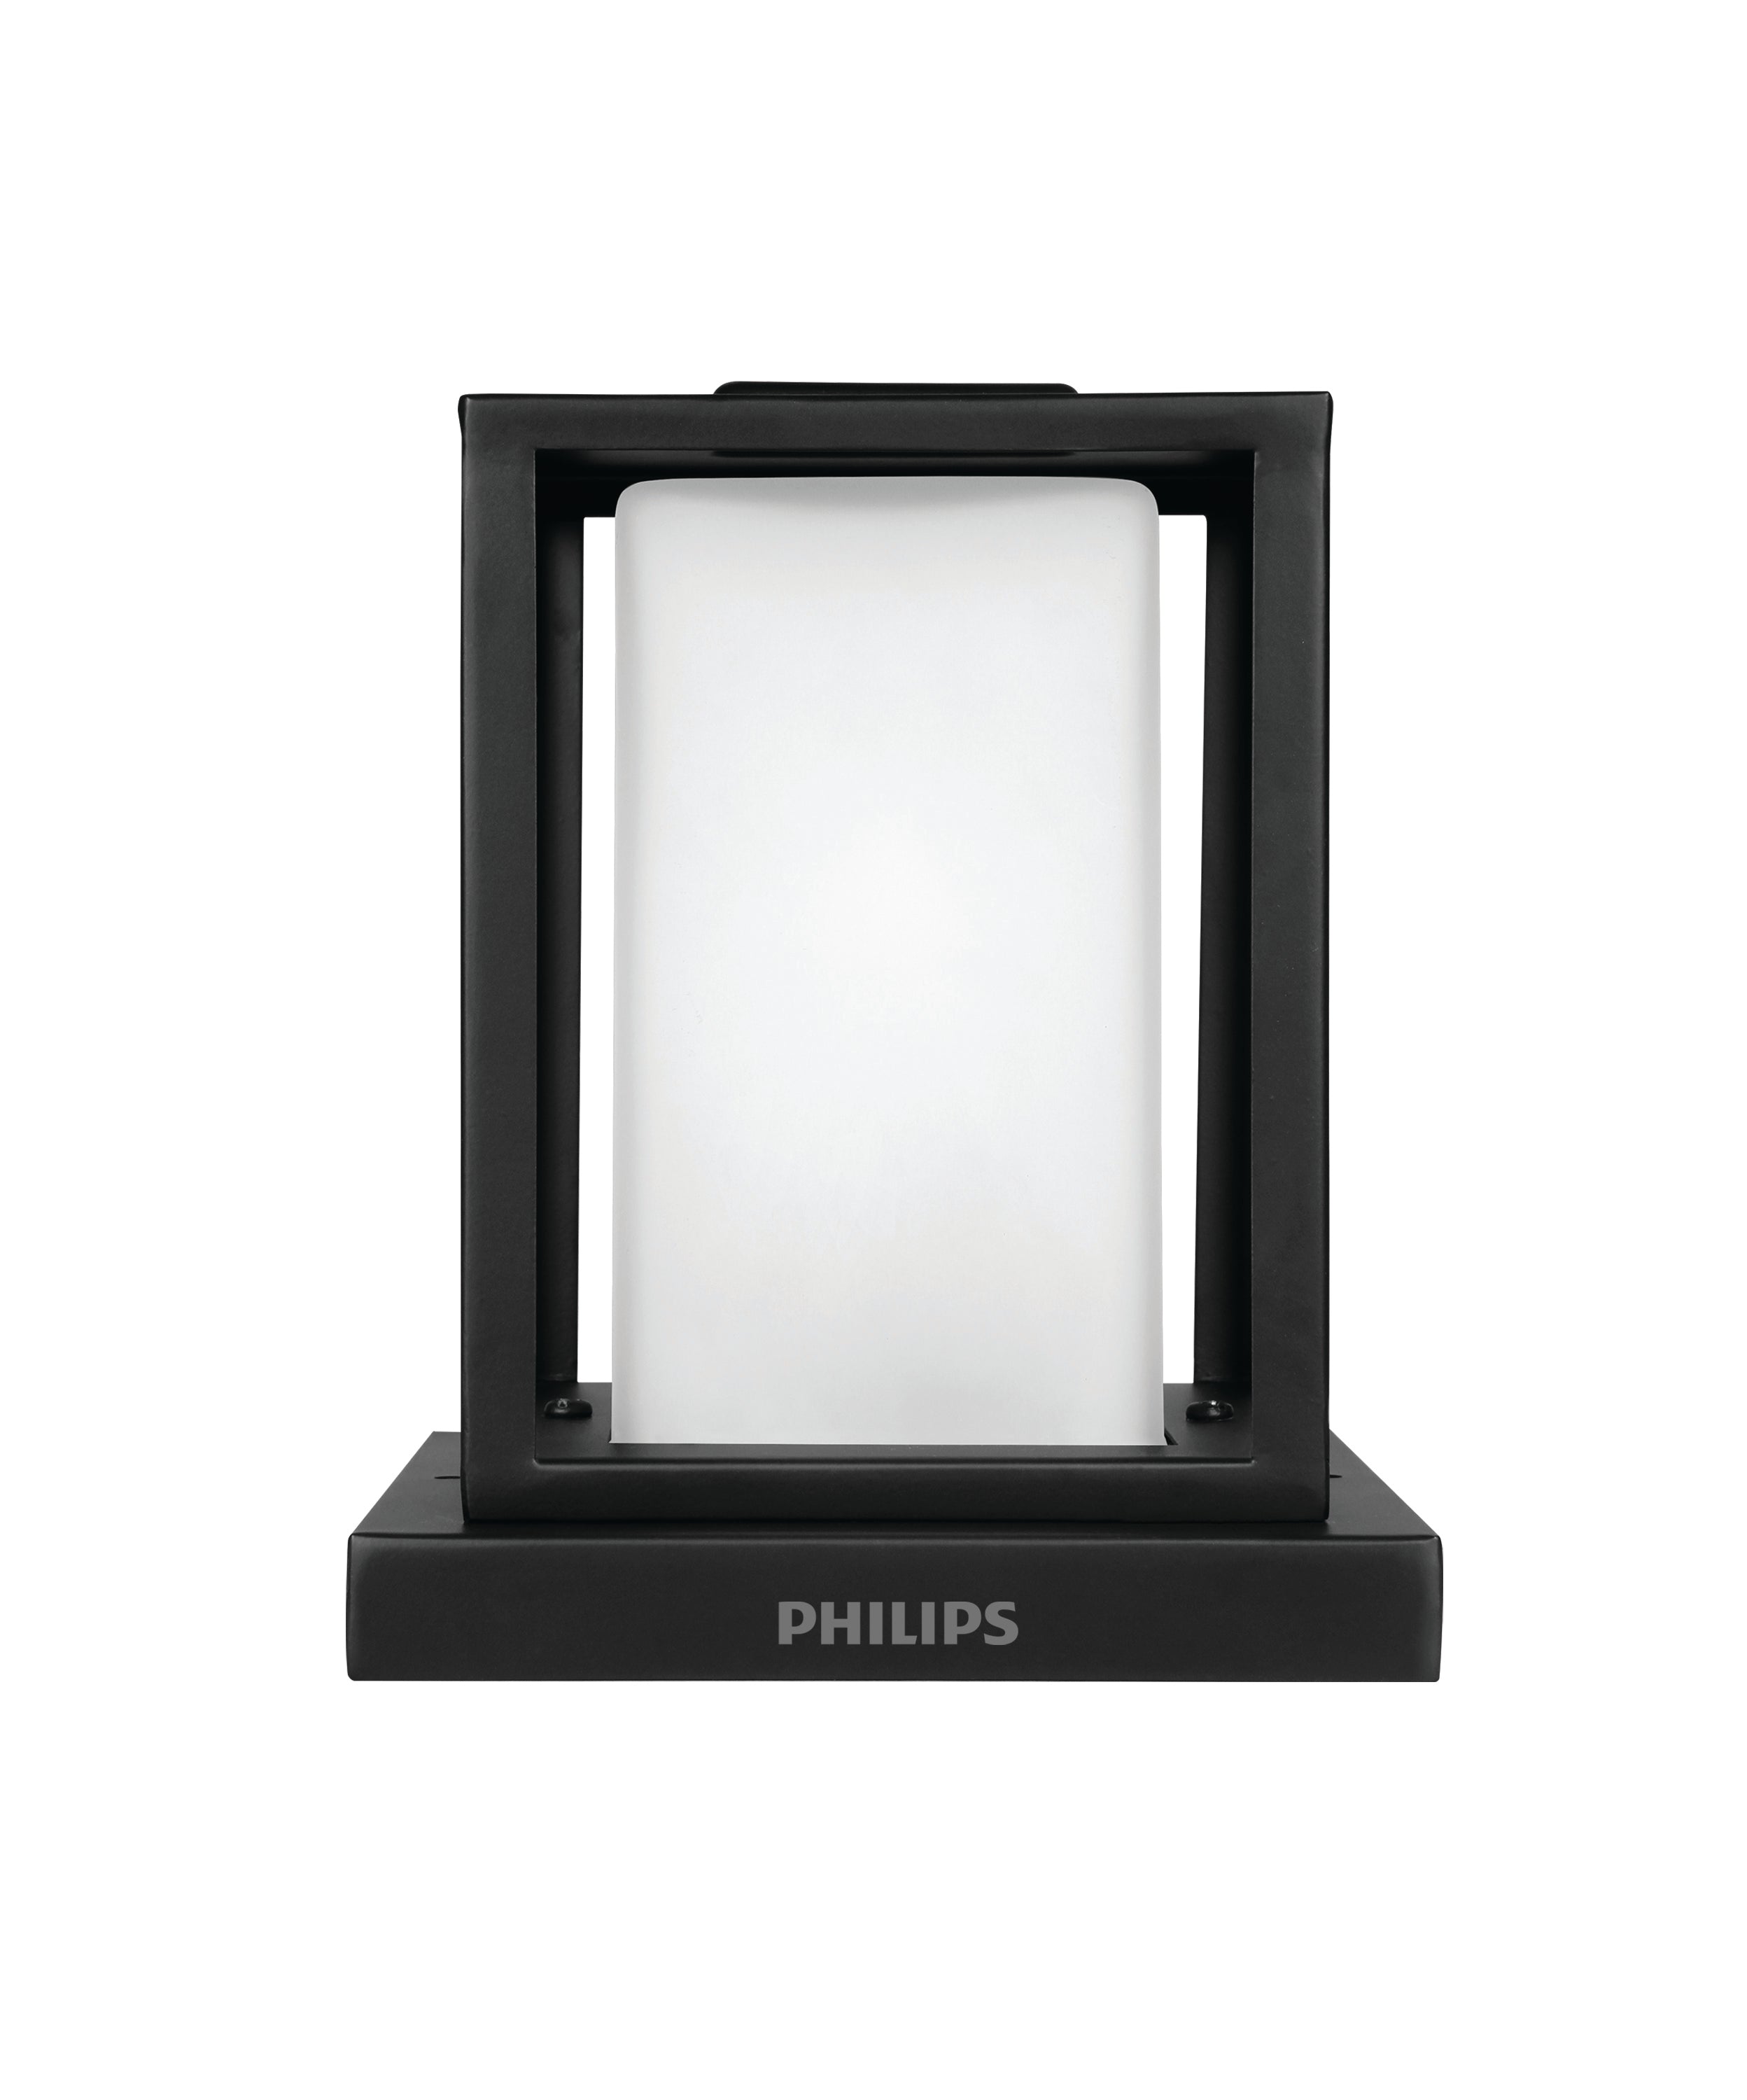 Philips Azure Gate light